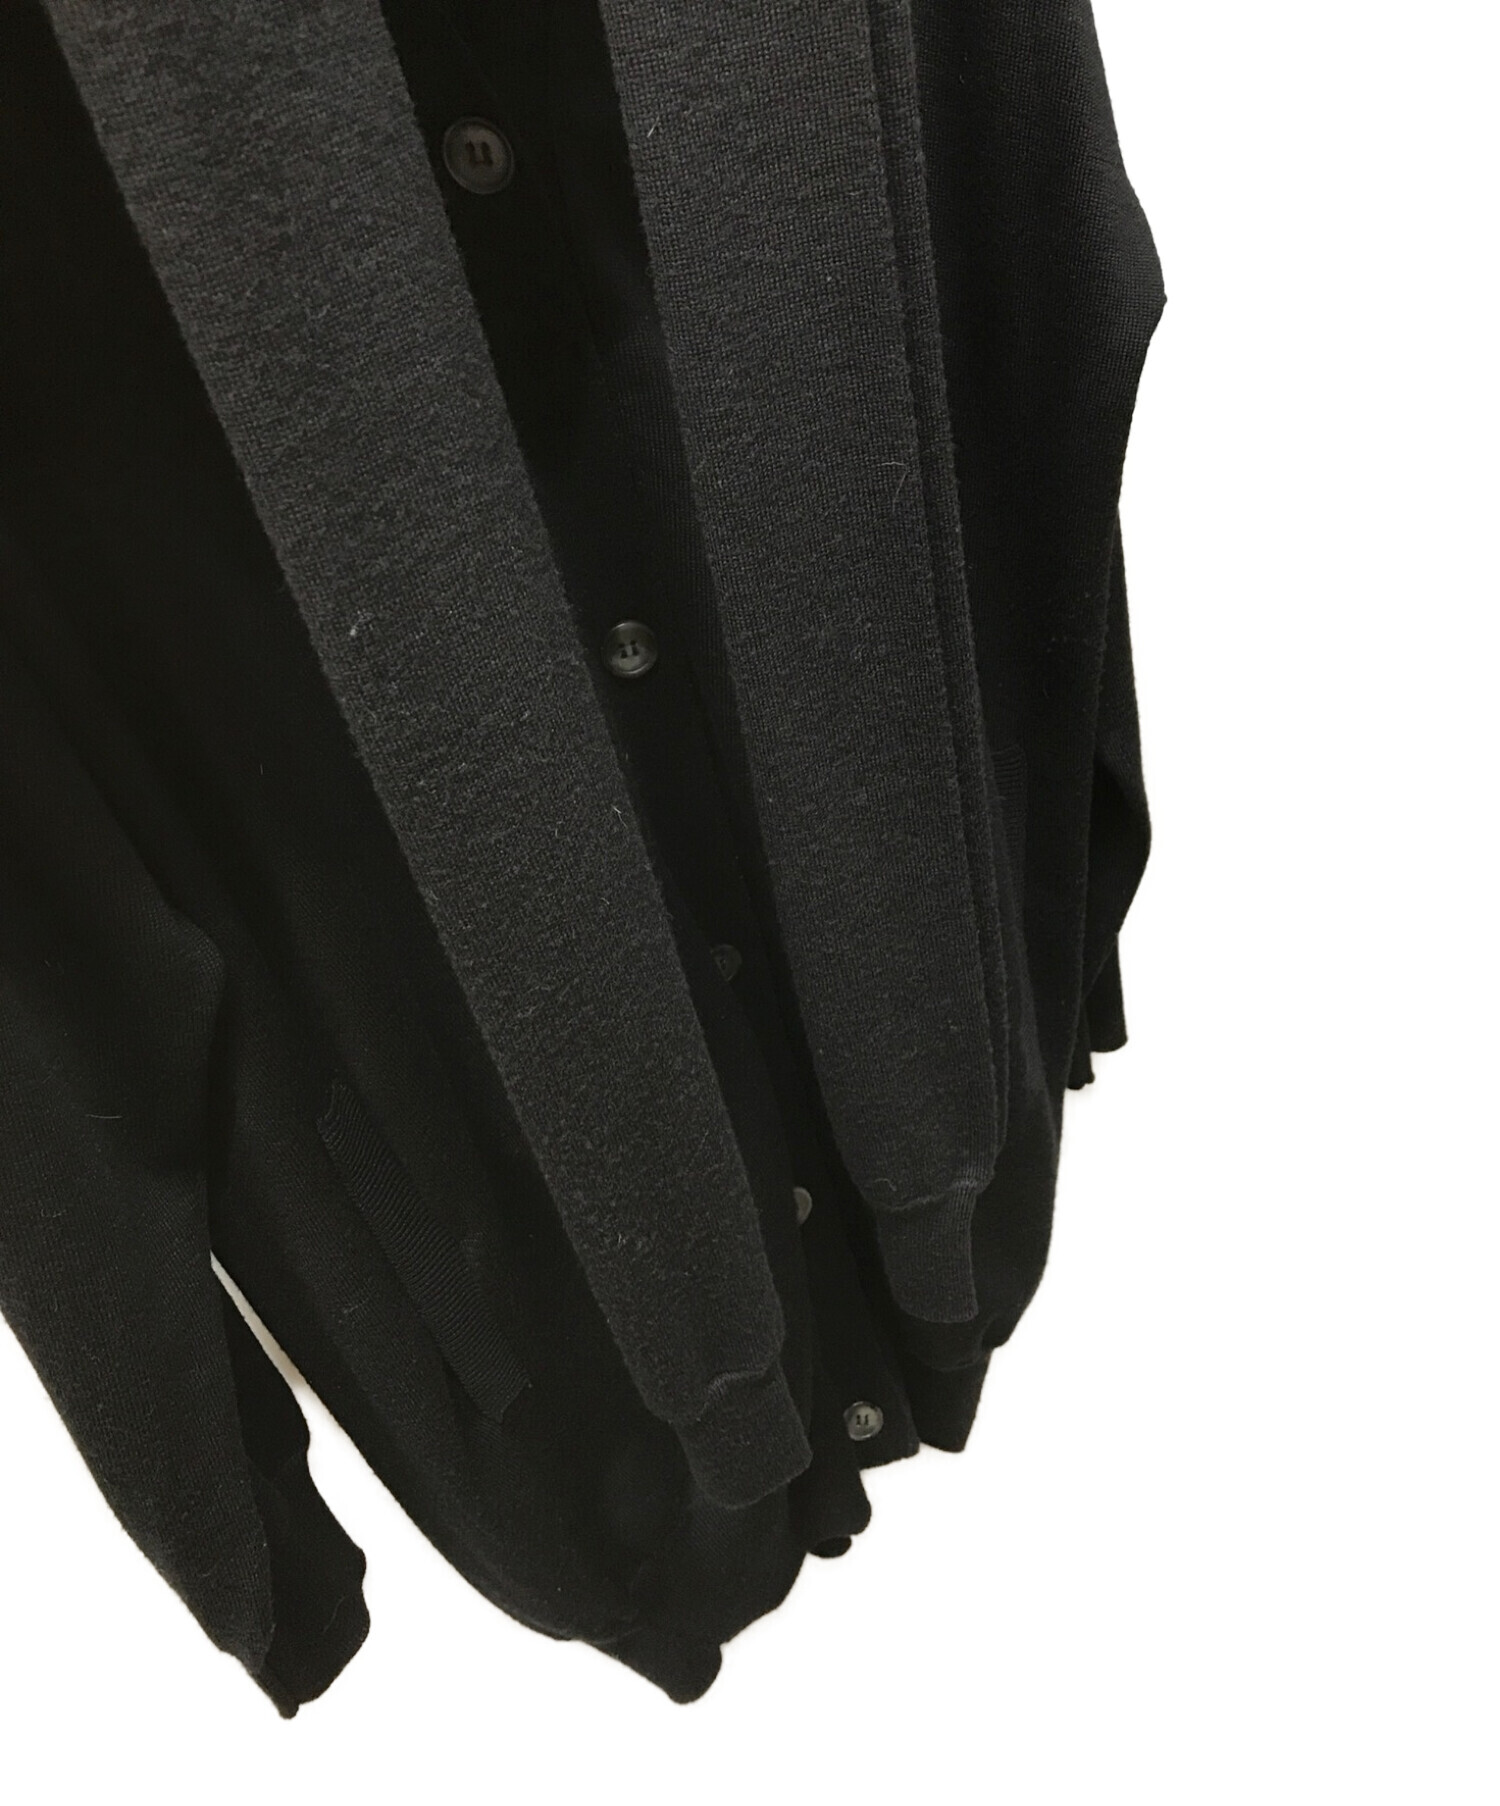 MM6 Maison Margiela (エムエムシックス メゾンマルジェラ) 袖型ストール付きカーディガン ブラック サイズ:Ｓ